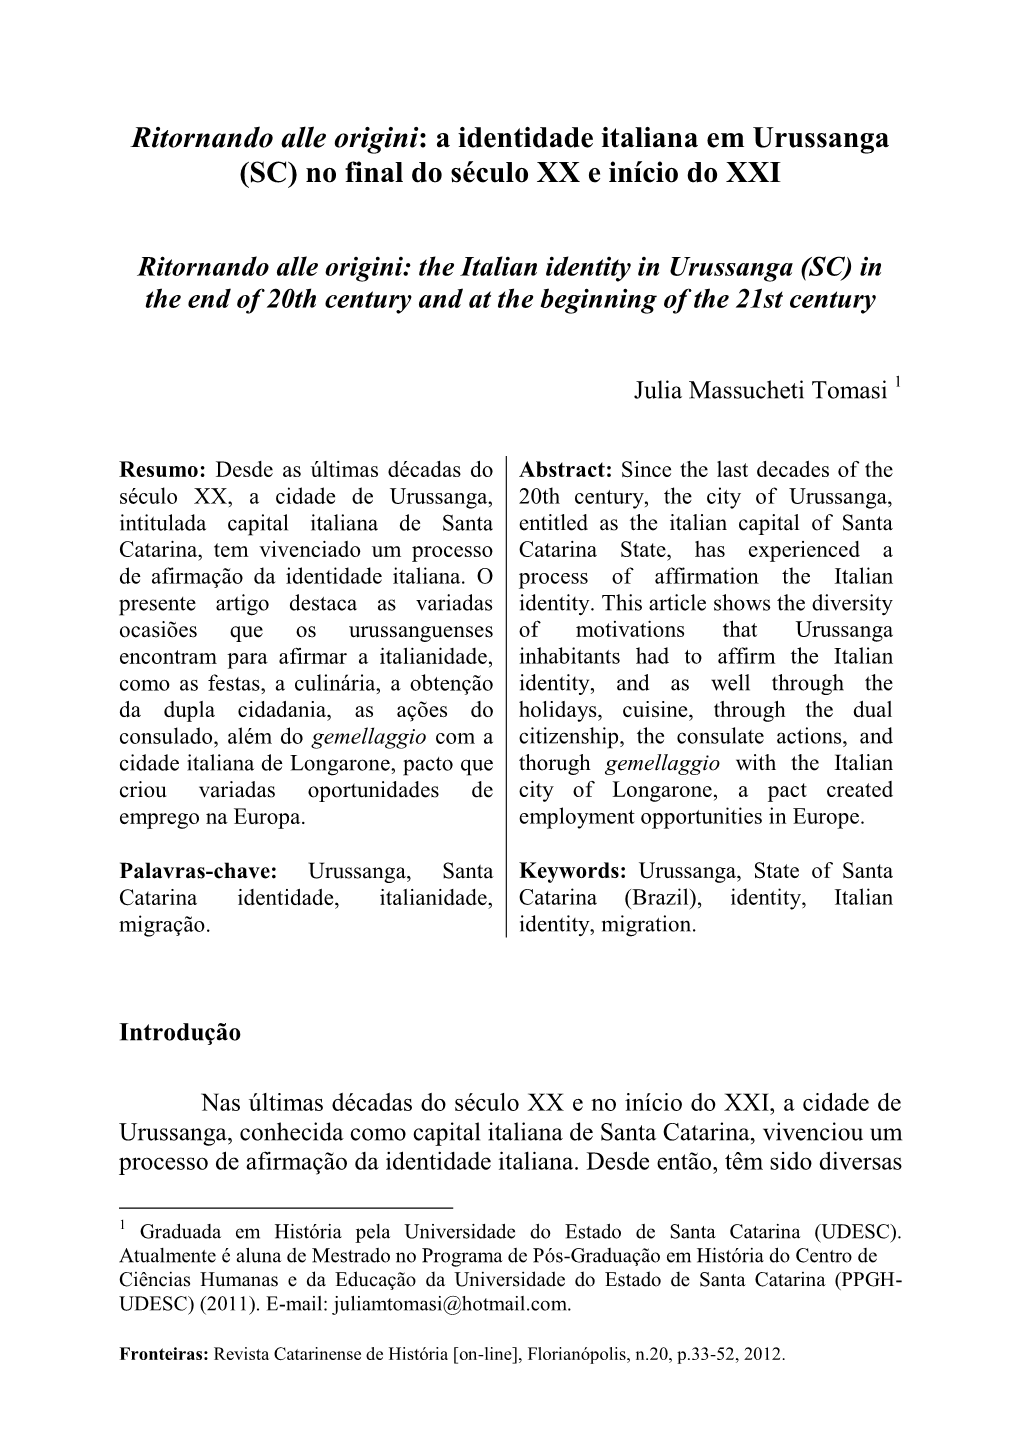 Ritornando Alle Origini: a Identidade Italiana Em Urussanga (SC) No Final Do Século XX E Início Do XXI